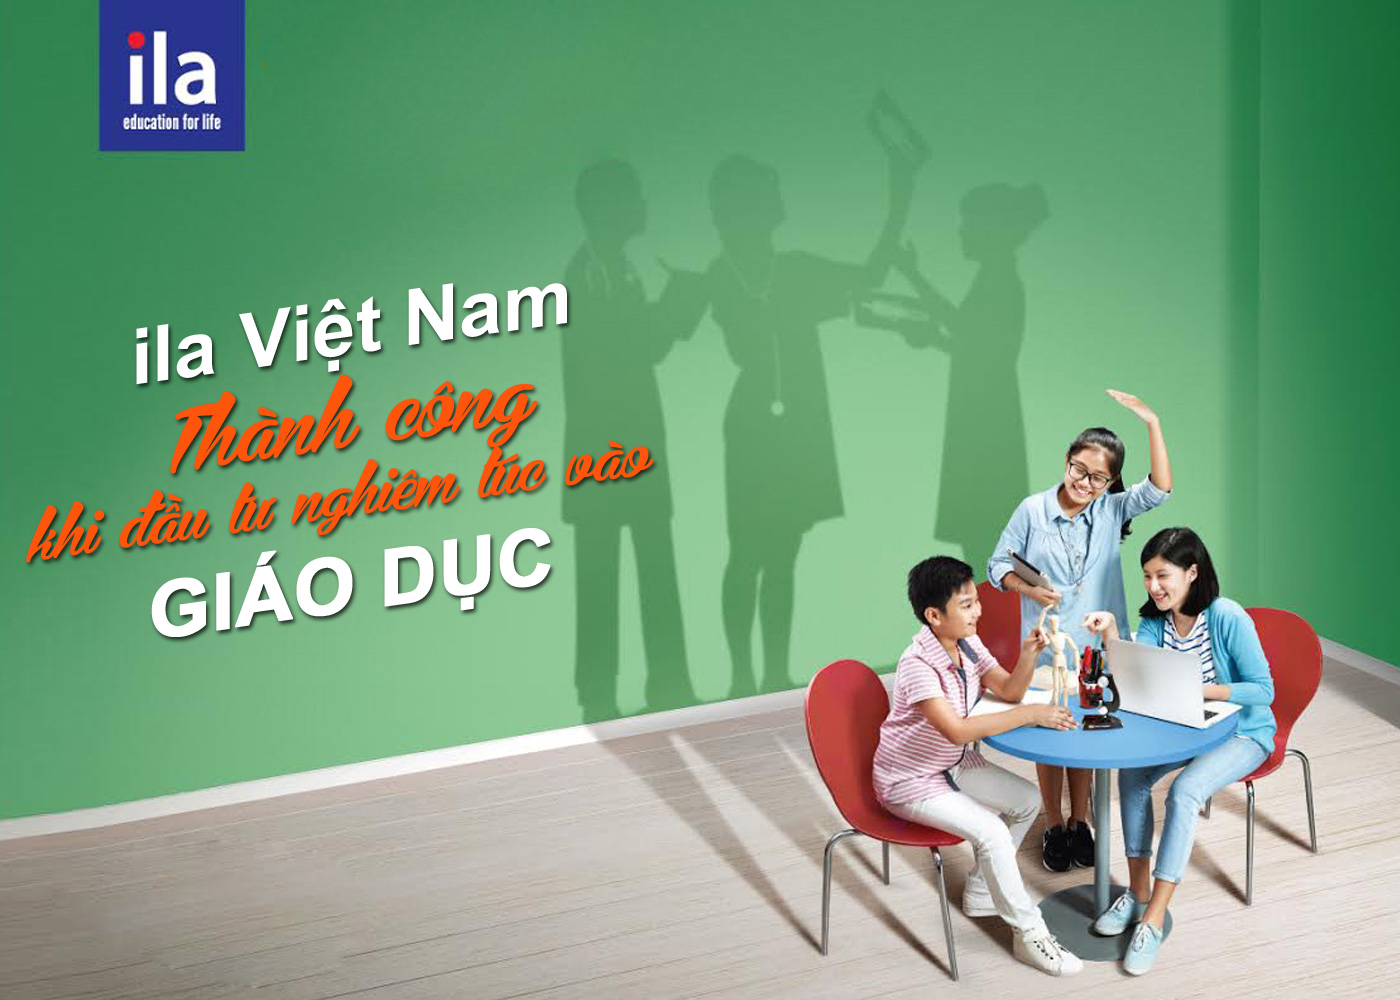 ILA Việt Nam - Thành công khi đầu tư nghiêm túc vào giáo dục - Ảnh 1